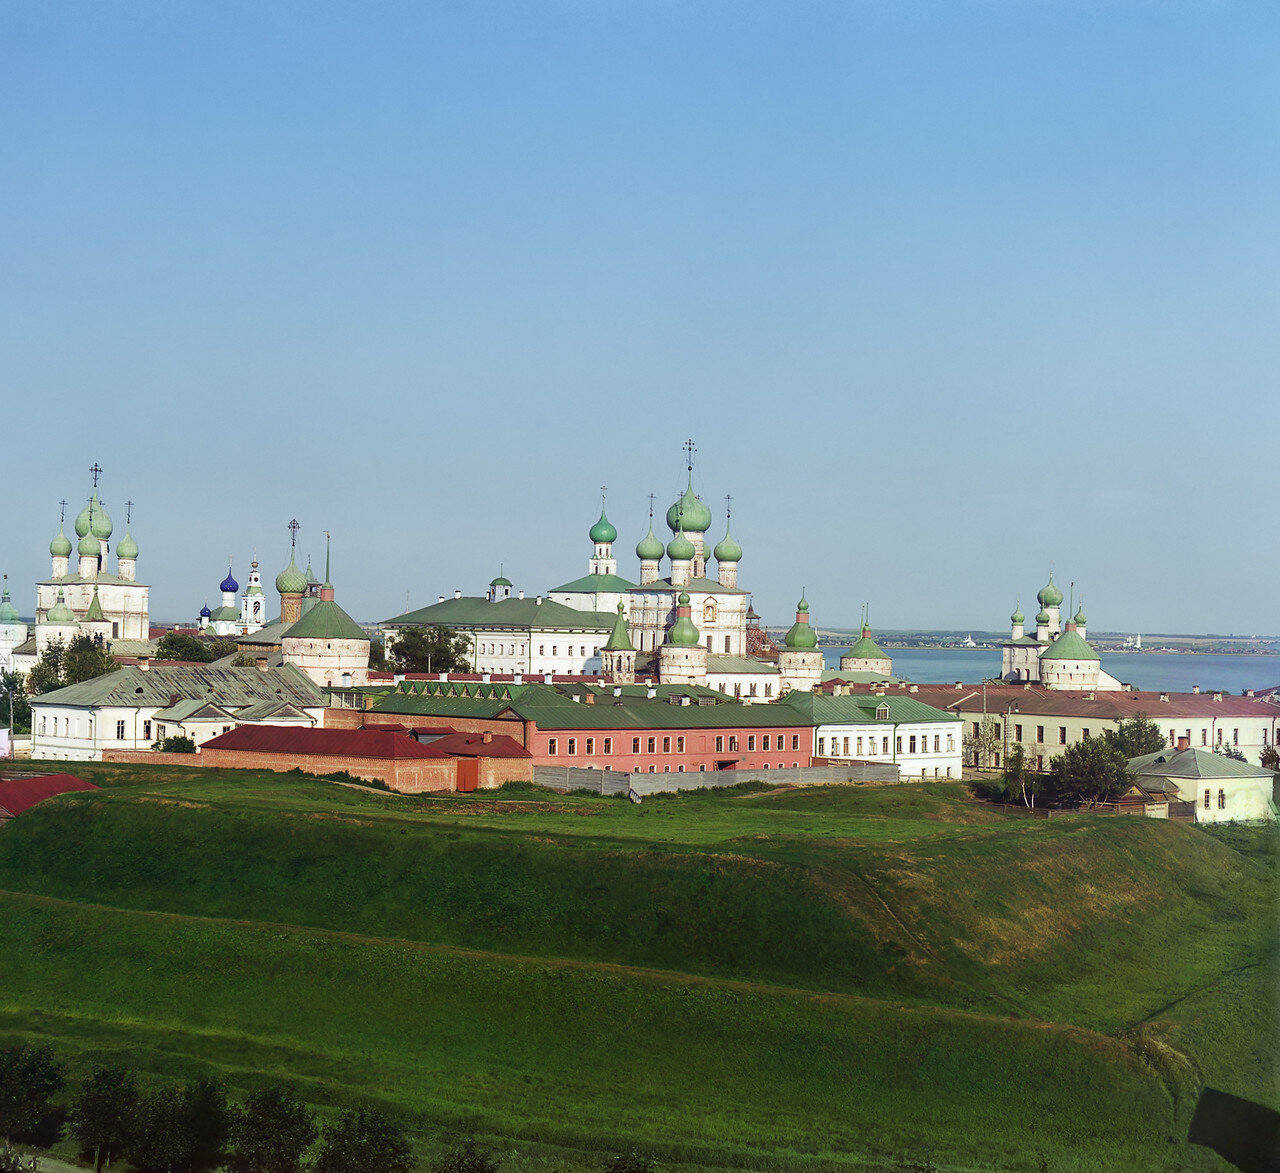 Общий вид Кремля с колокольни Всесвятской церкви. Вид с северо-запада